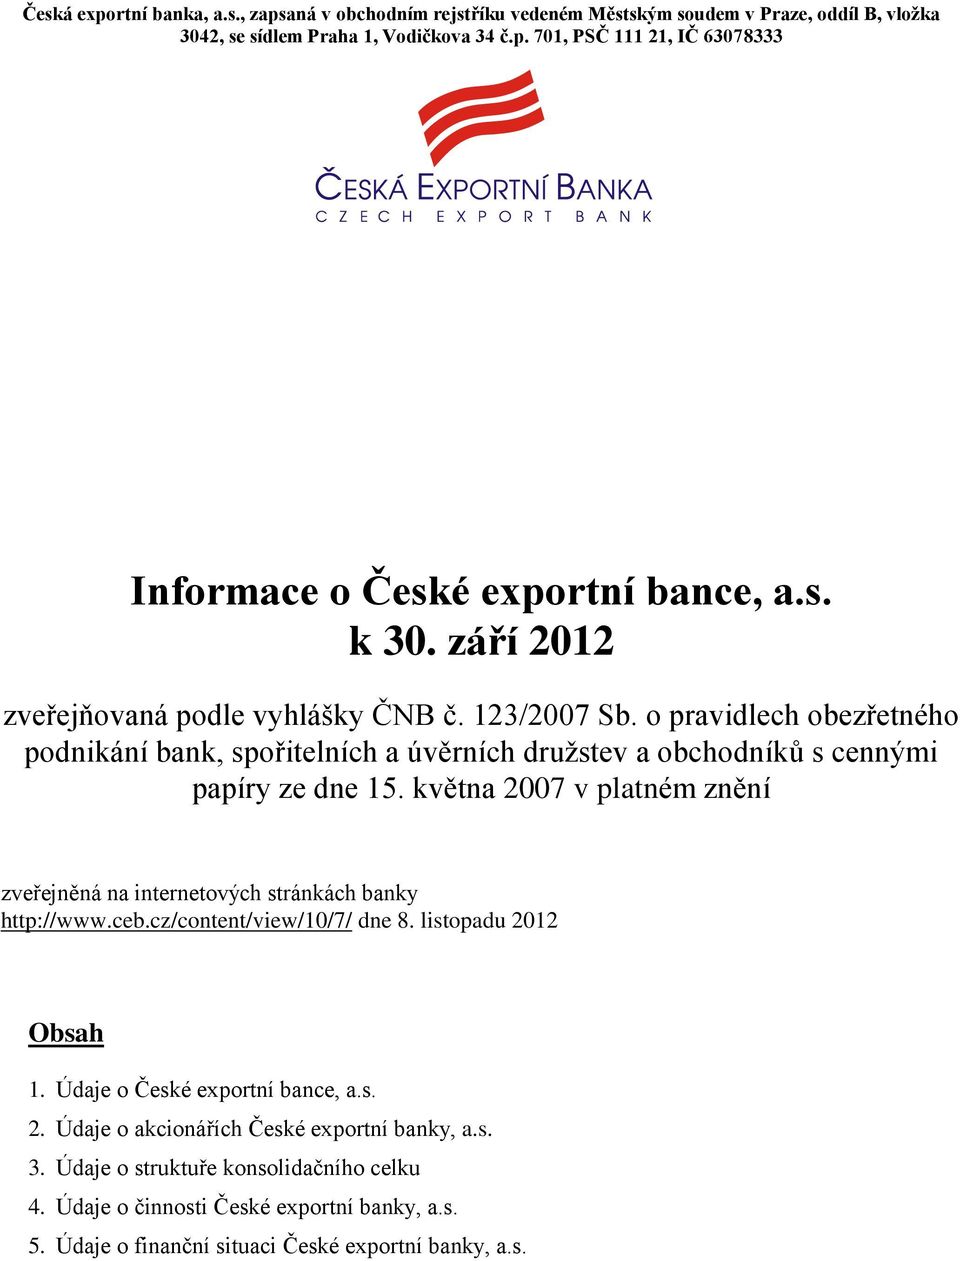 května 2007 v platném znění zveřejněná na internetových stránkách banky http://www.ceb.cz/content/view/10/7/ dne 8. listopadu 2012 Obsah 1. Údaje o České exportní bance, a.s. 2. Údaje o akcionářích České exportní banky, a.